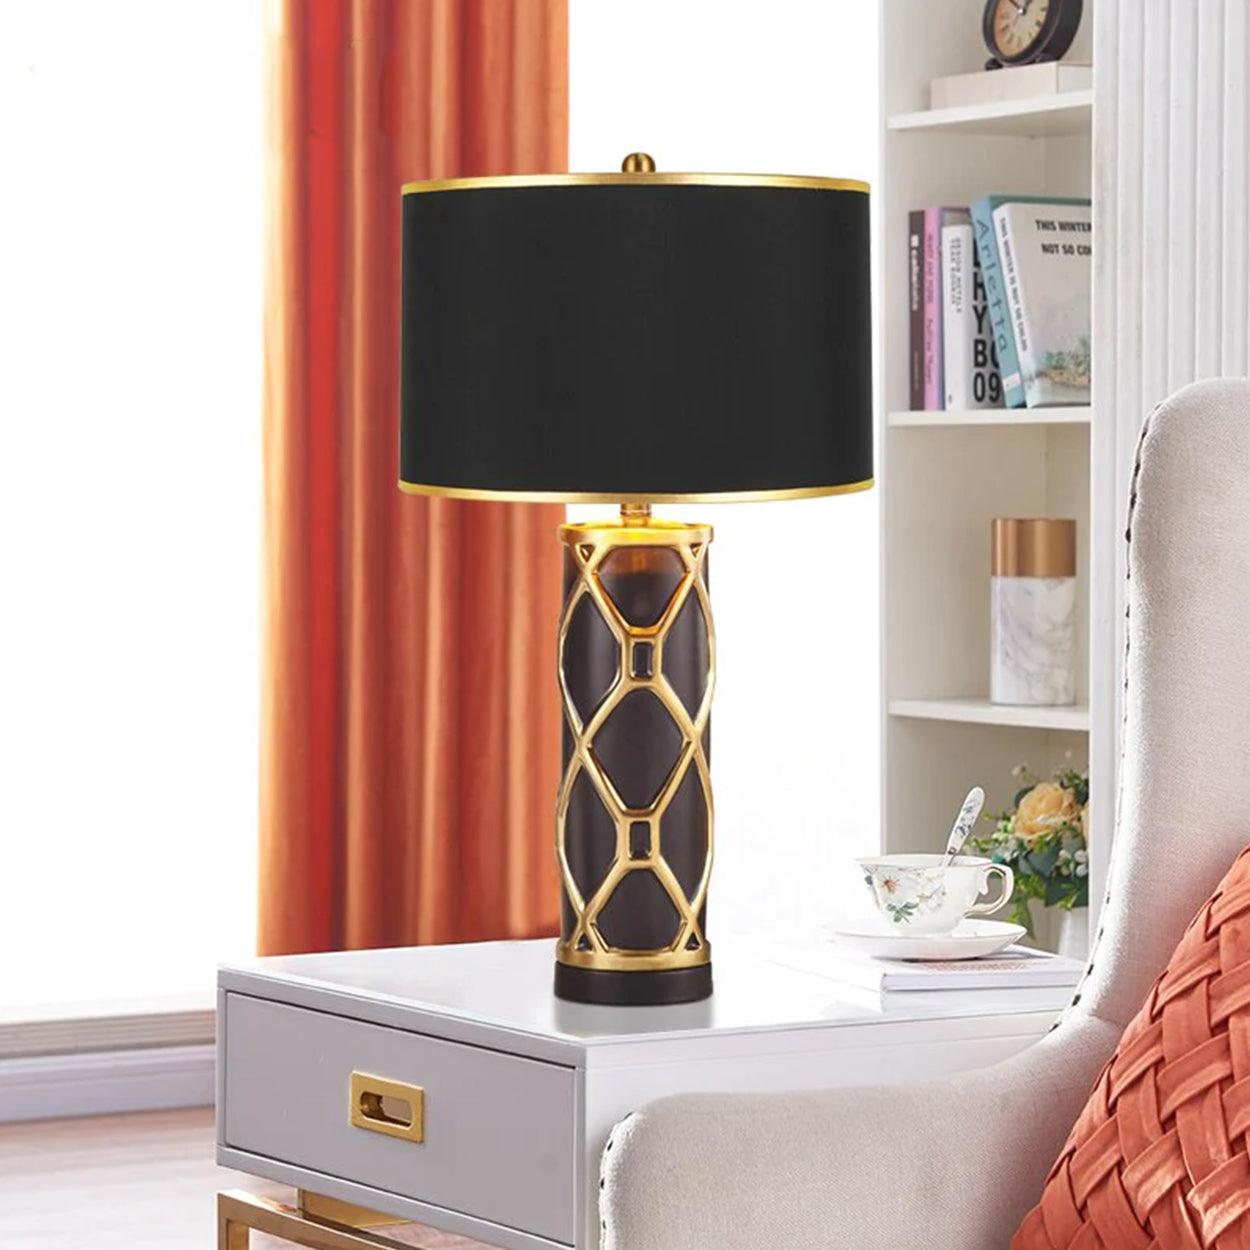 ROWAN MODERN GOLDEN STRIPES CERAMIC TABLE LAMP BEDSIDE LAMP - Ankur Lighting